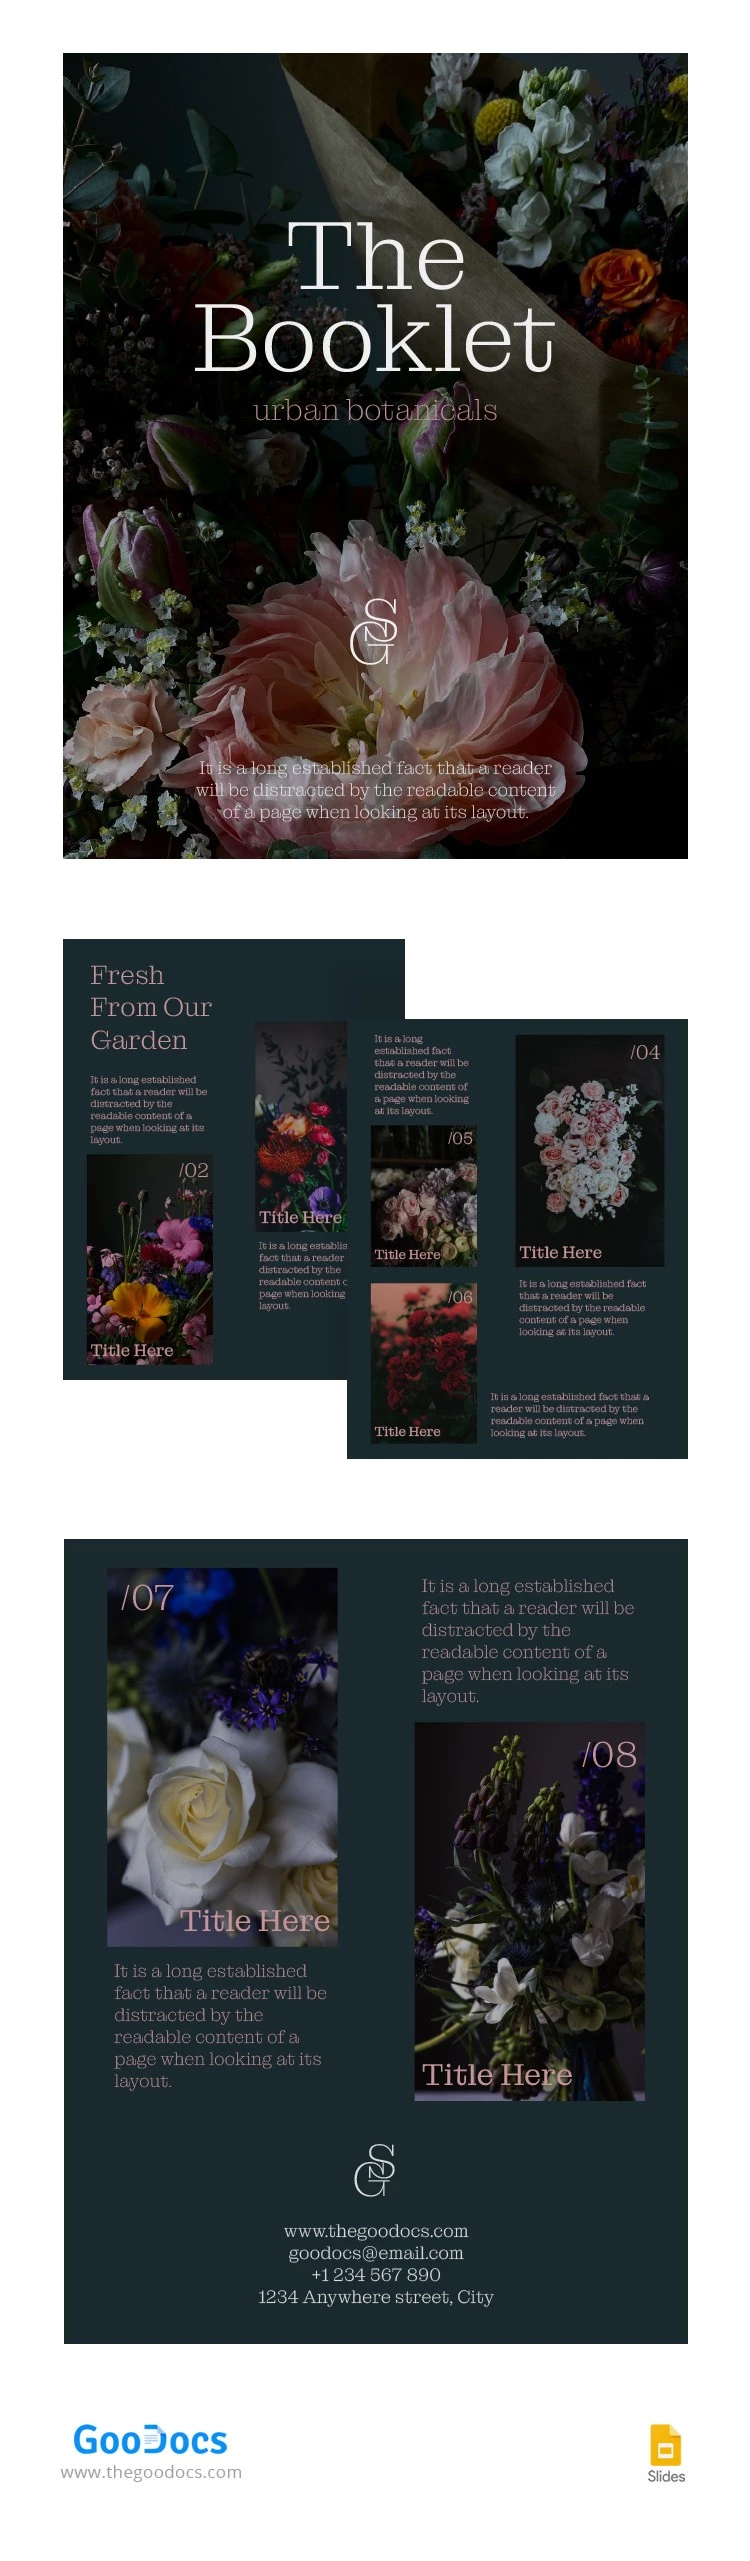 Moderne städtische botanische Broschüre - free Google Docs Template - 10064557